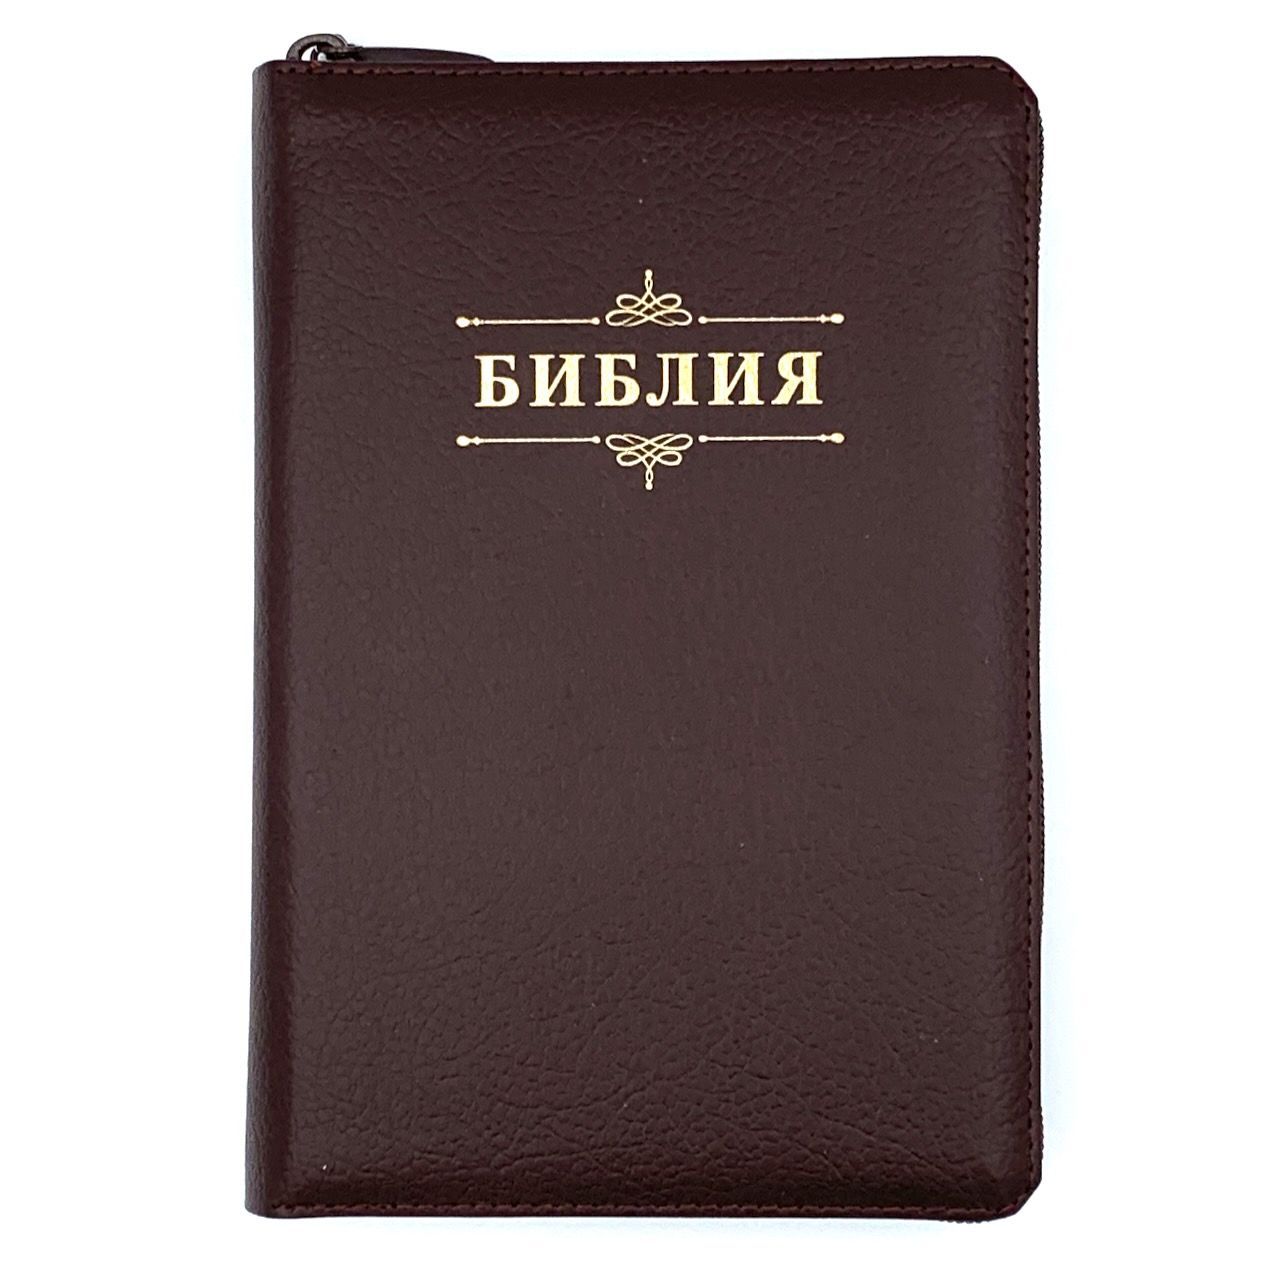 Библия 053zti код A3 надпись "Библия", кожаный переплет на молнии с индексами, цвет коричневый  пятнистый, формат 140*202 мм